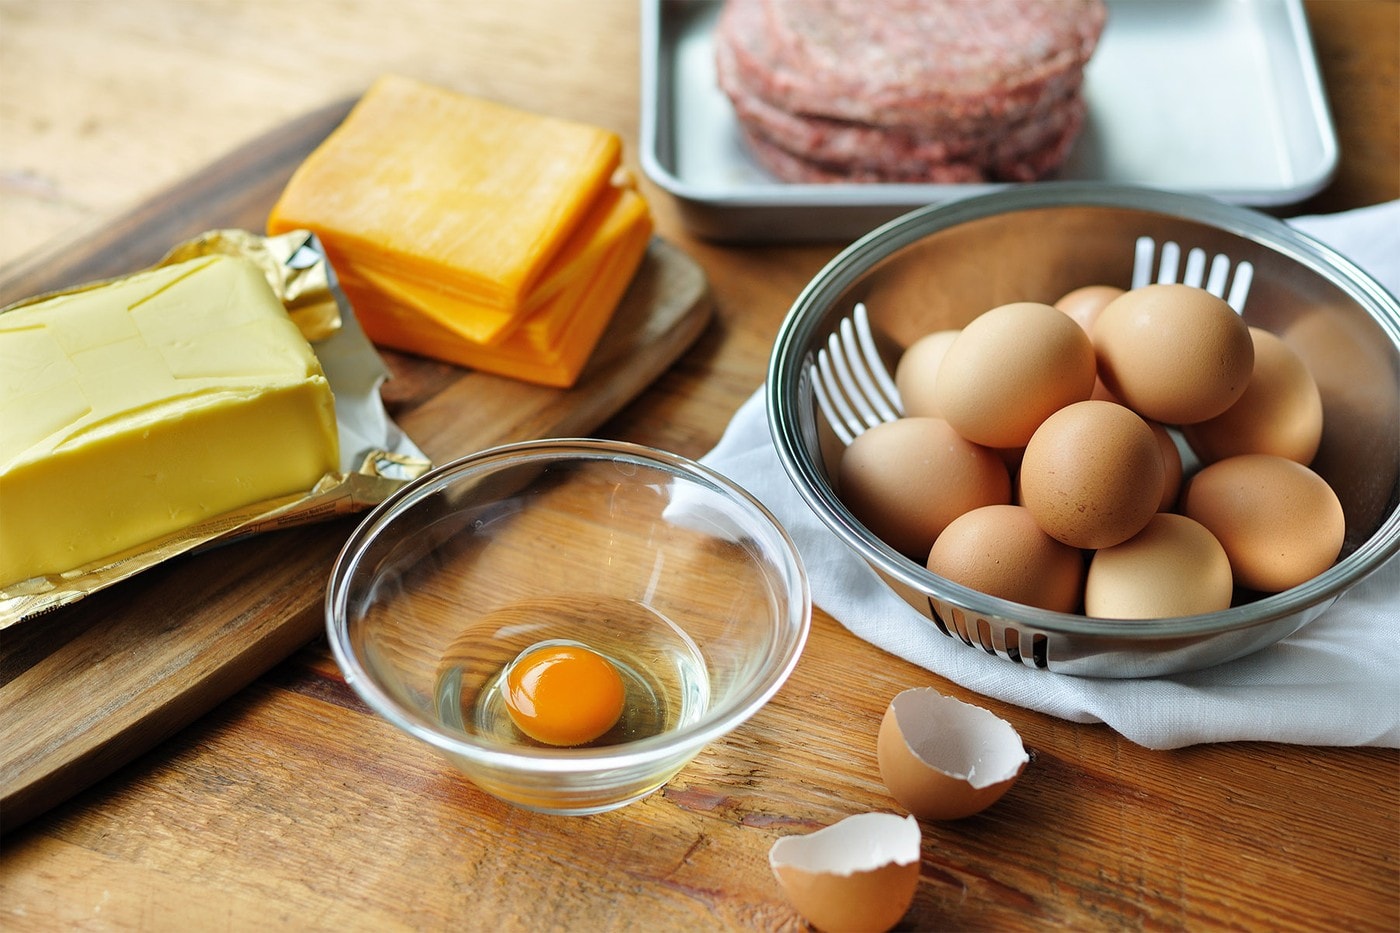 LA 人氣「蛋料理」餐廳 Eggslut 於東京開設首間海外分店